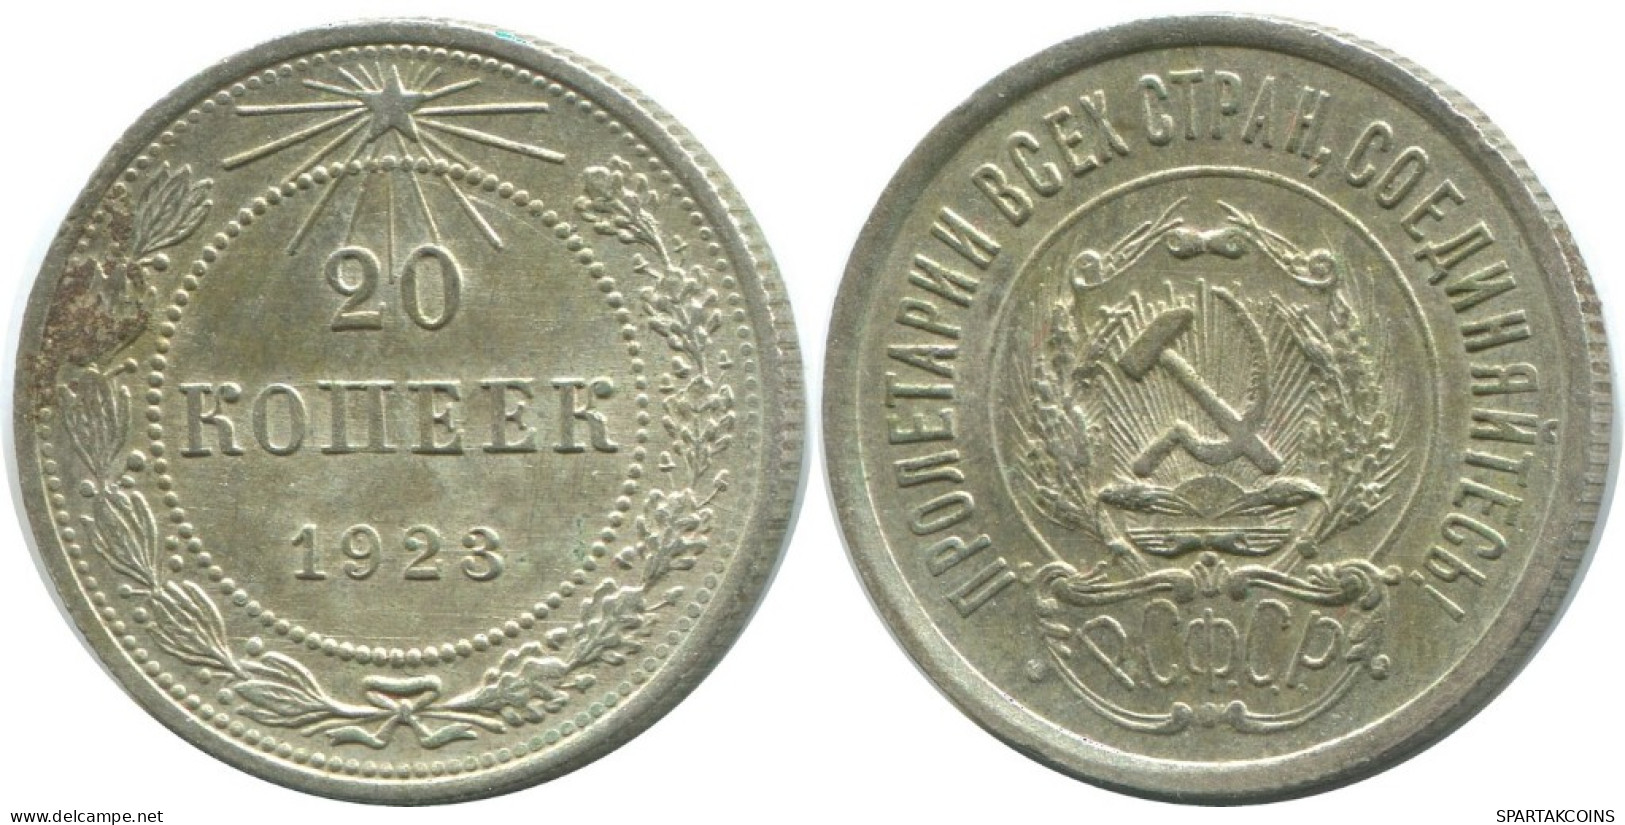 20 KOPEKS 1923 RUSSIA RSFSR SILVER Coin HIGH GRADE #AF469.4.U.A - Russland